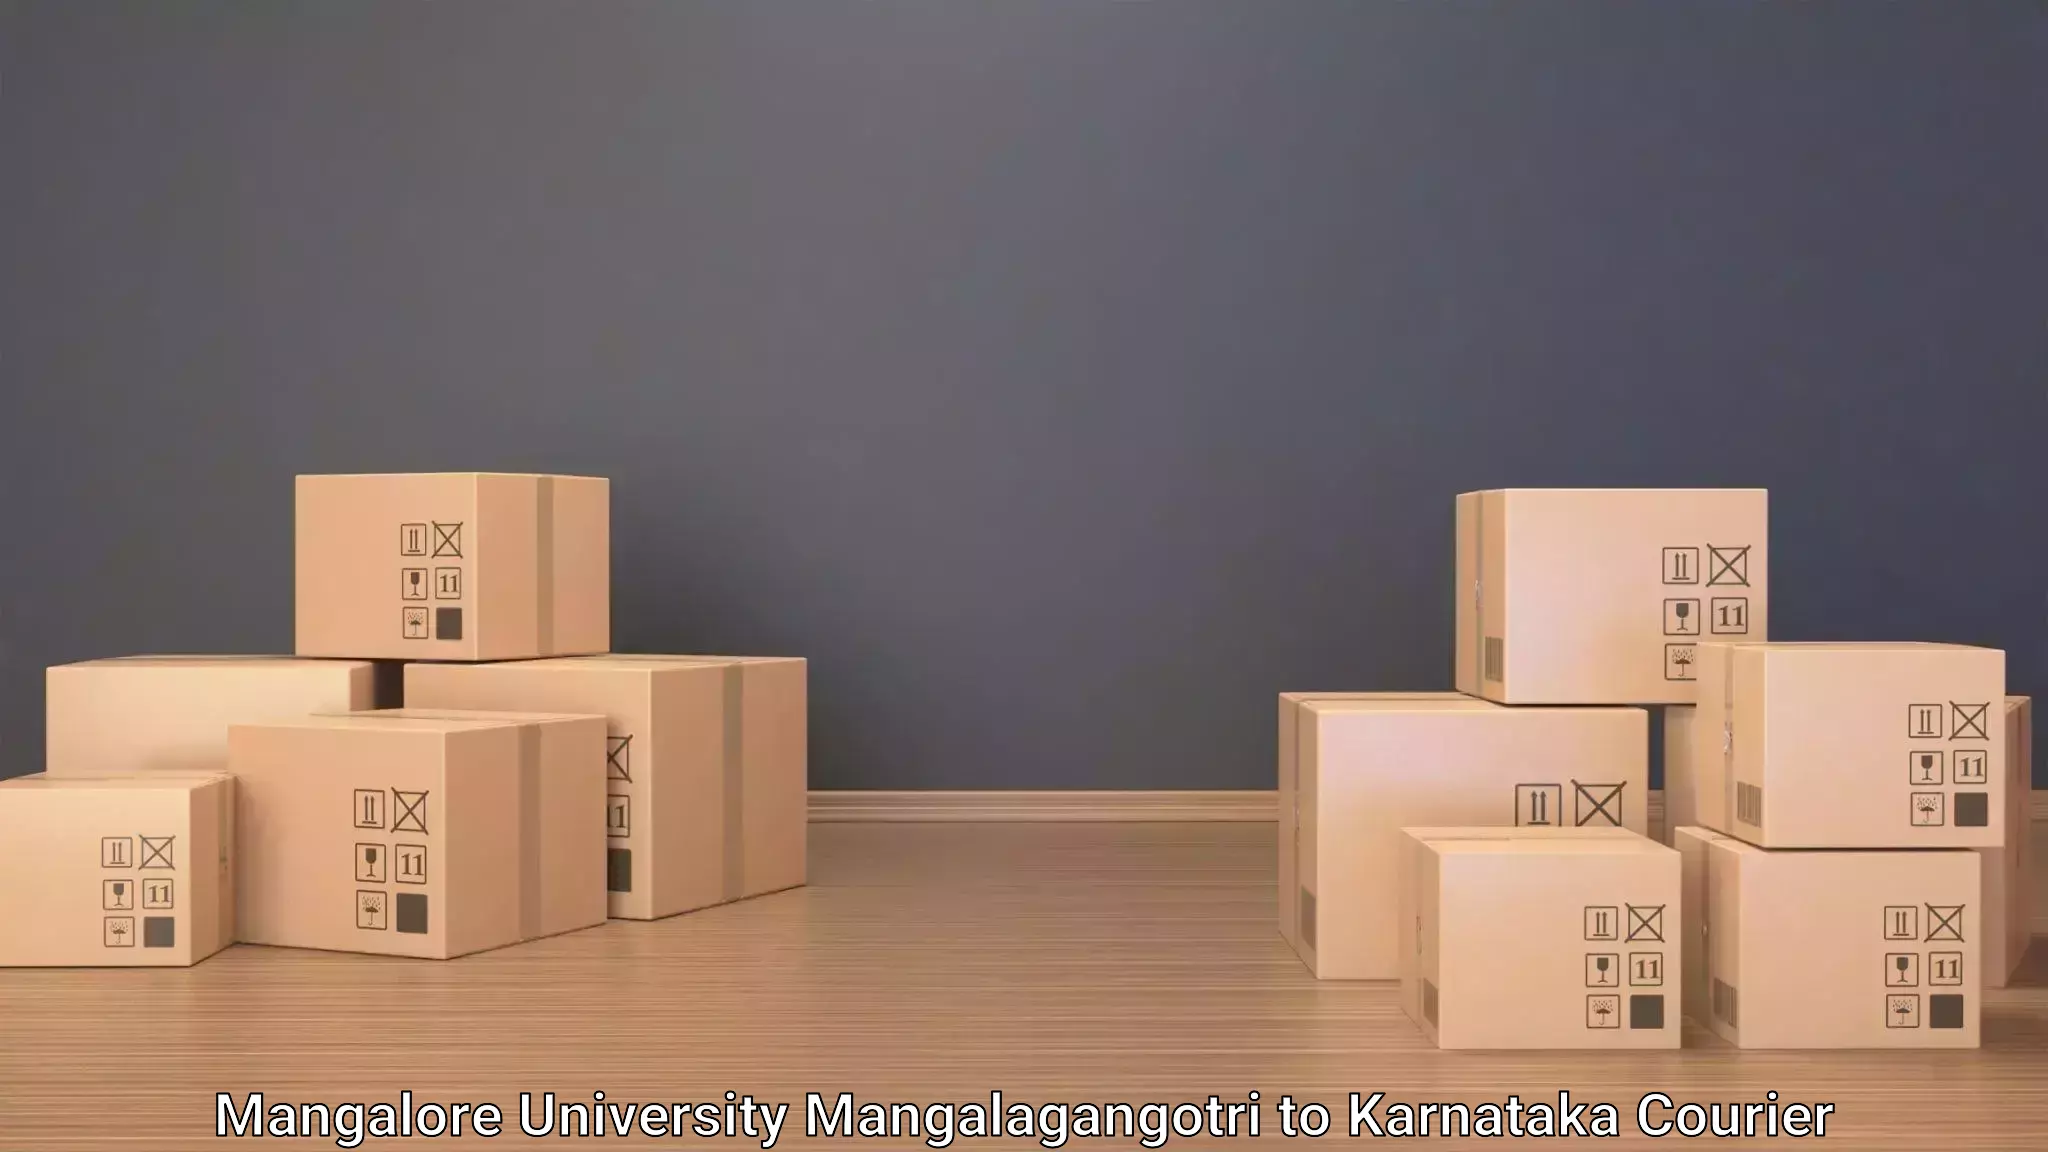 Business luggage transport in Mangalore University Mangalagangotri to Deodurga